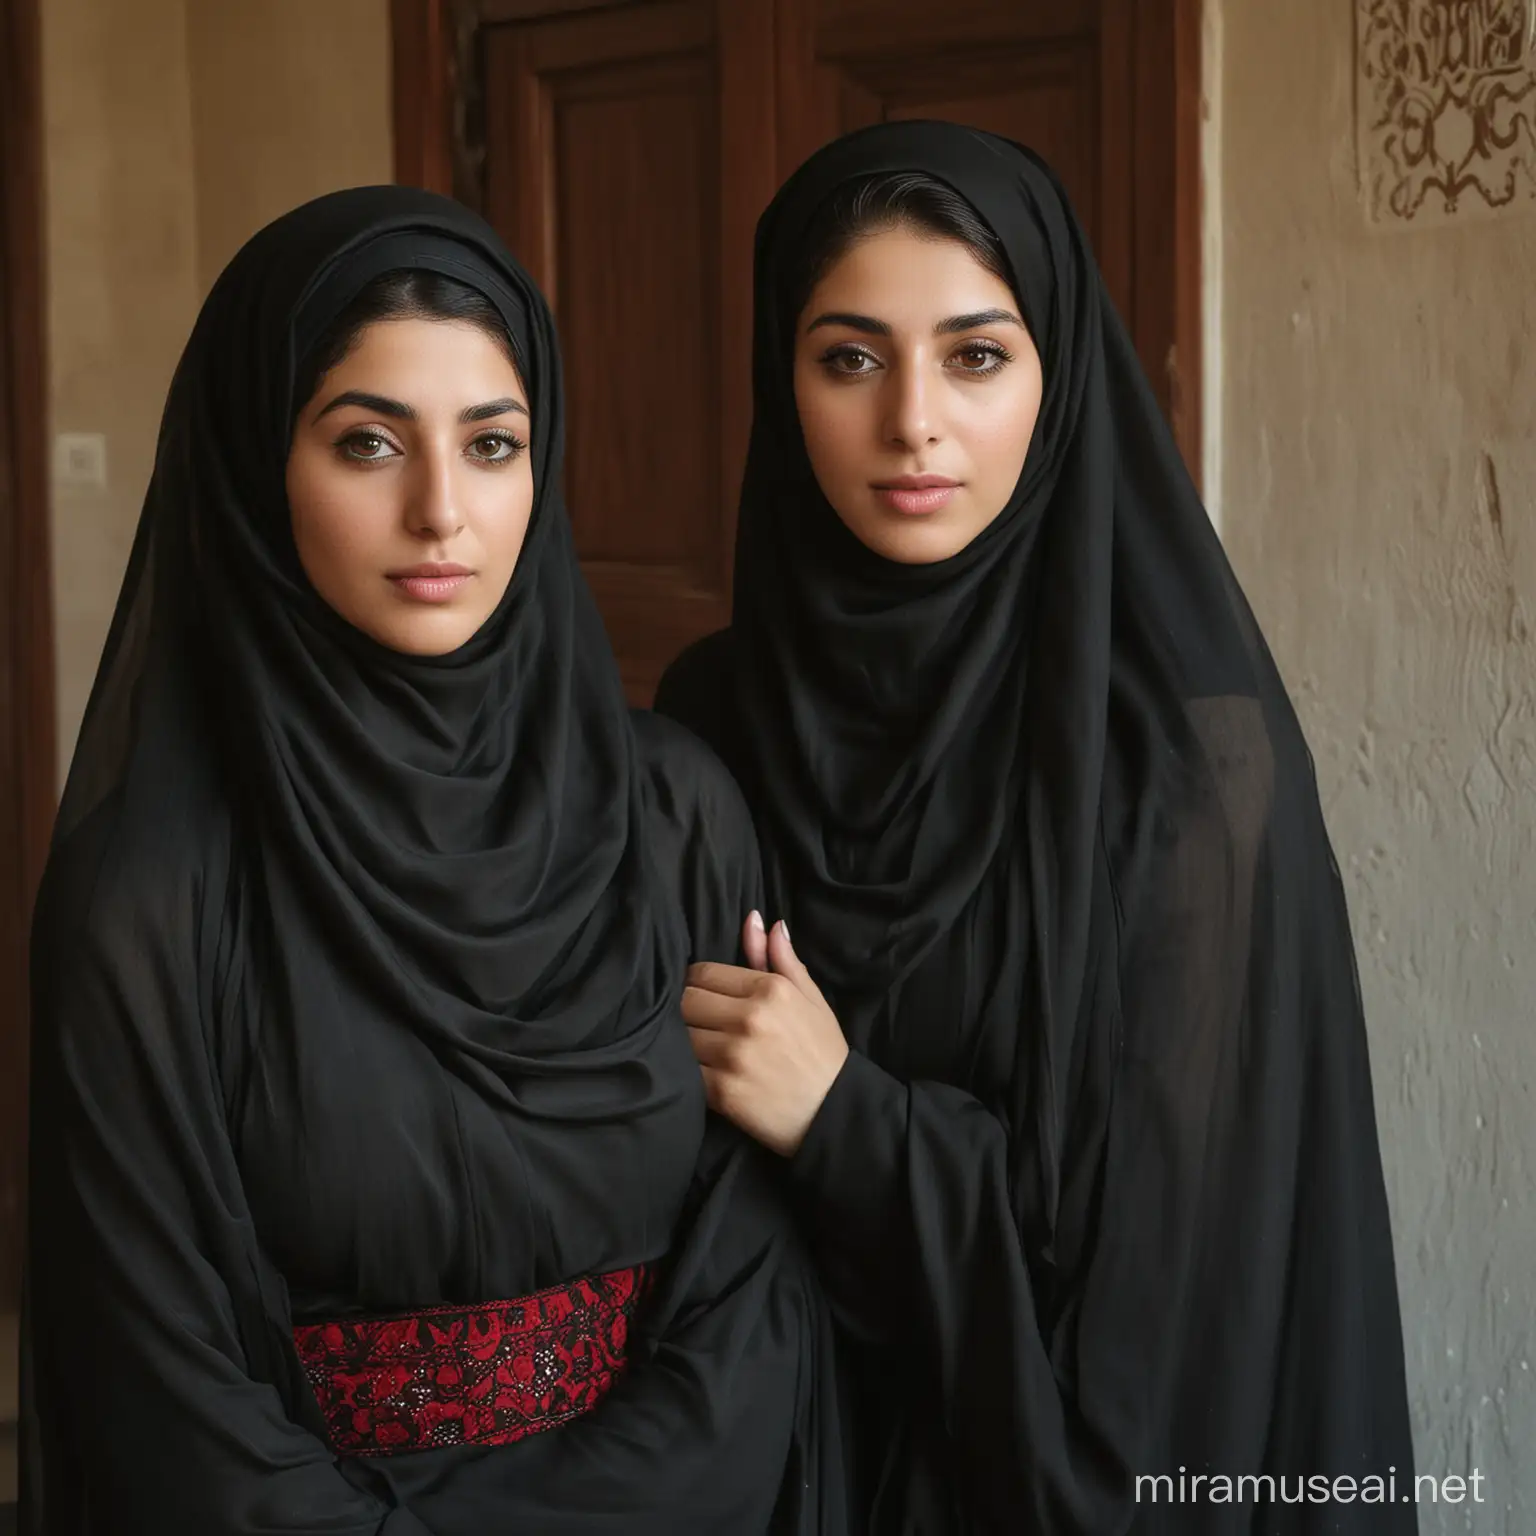 لیلا و فاطمه هردو حجابی و زیبا هستند، و حجاب های سرخ و سیاه دارند، همینطور هردو لزبین می کنند، و سینه های بزرگ دارند، و در داخل یک خانه ایرانی هستند